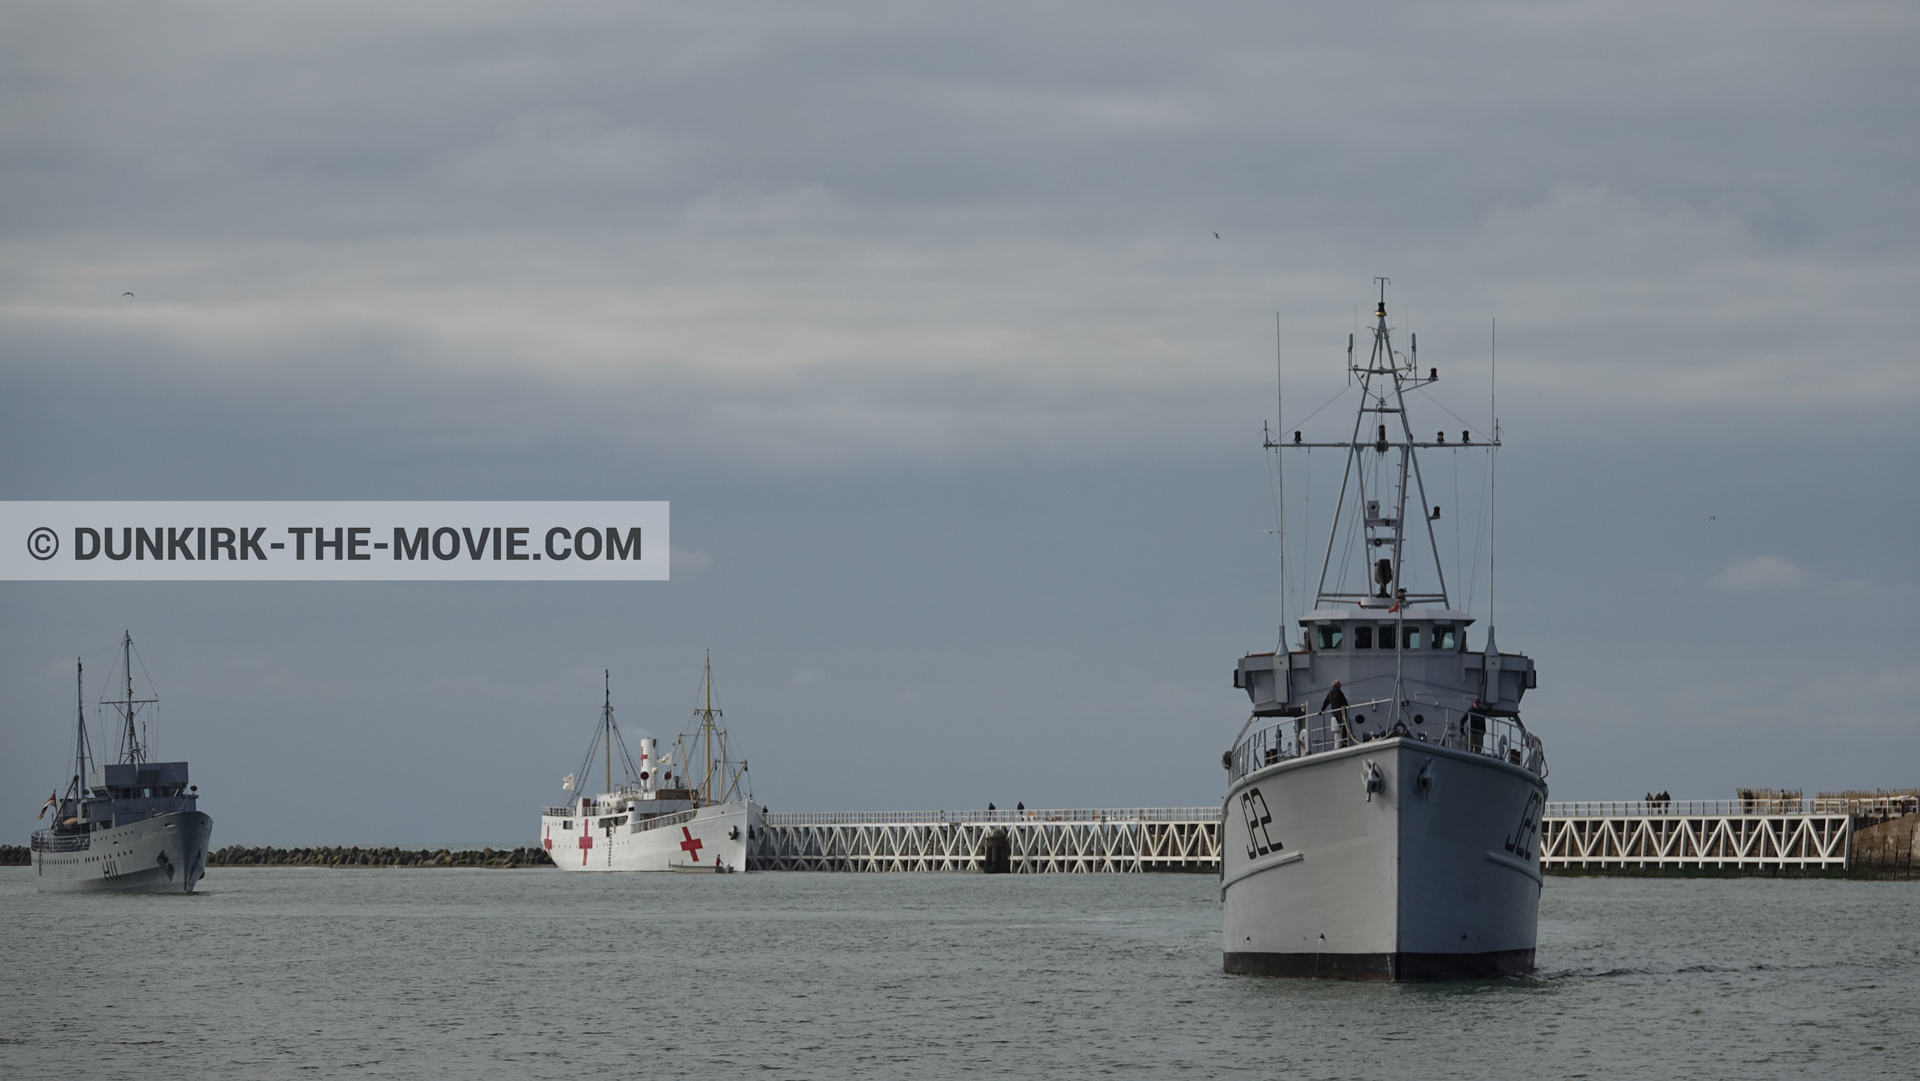 Photo avec bateau, ciel nuageux, H11 - MLV Castor, J22 -Hr.Ms. Naaldwijk, jetée EST, mer calme, M/S Rogaland,  des dessous du Film Dunkerque de Nolan